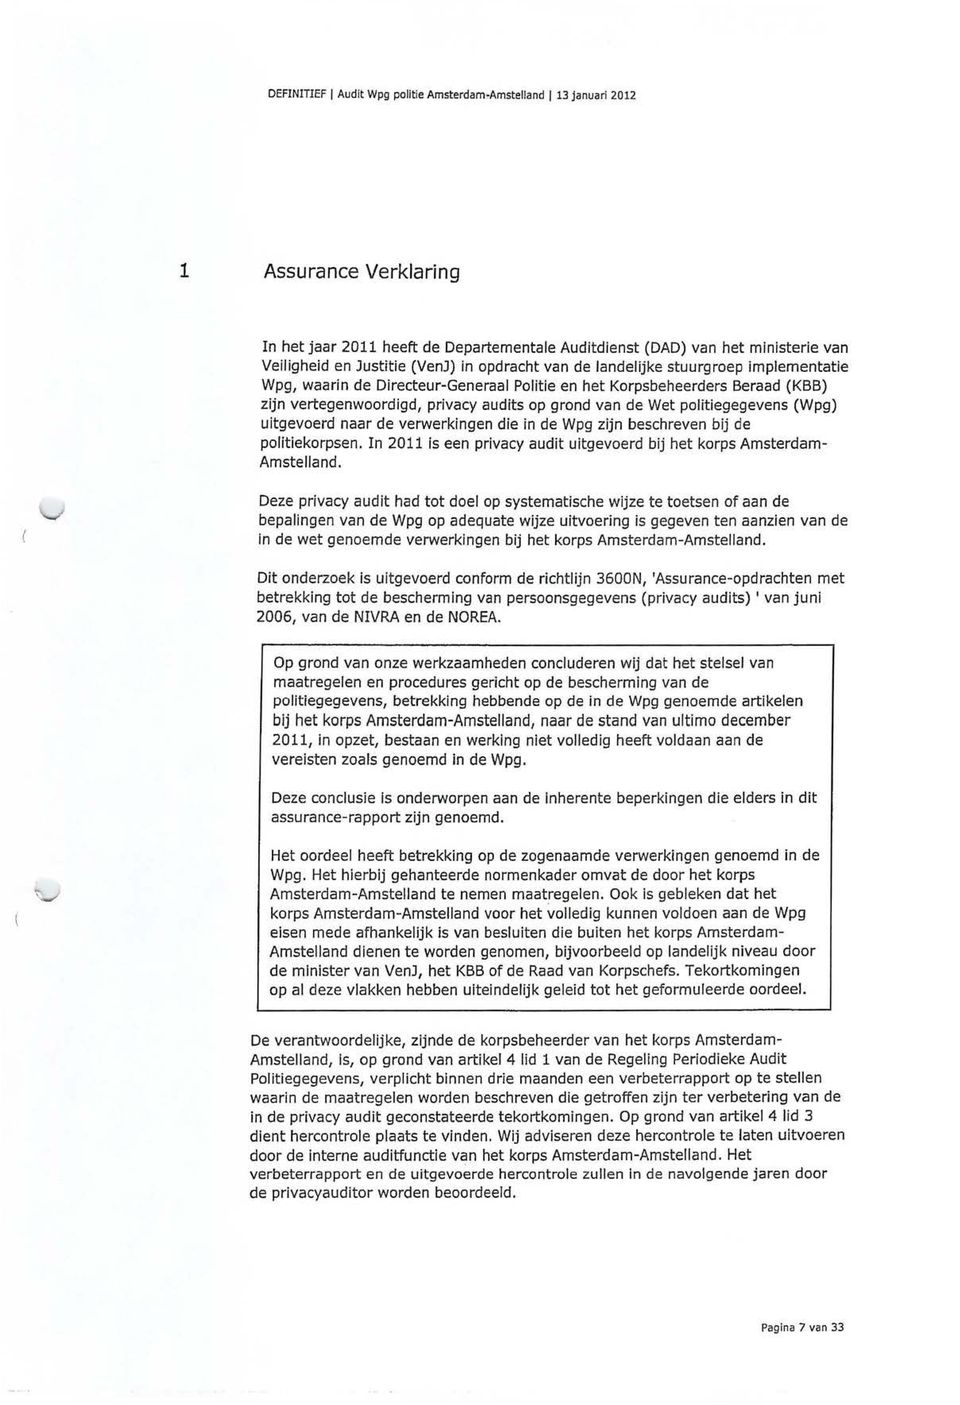 politiegegevens (Wpg) uitgevoerd naar de verwerkingen die in de Wpg zijn beschreven bij de politiekorpsen. In 2011 is een privacy audit uitgevoerd bij het korps Amsterdam Amstelland.